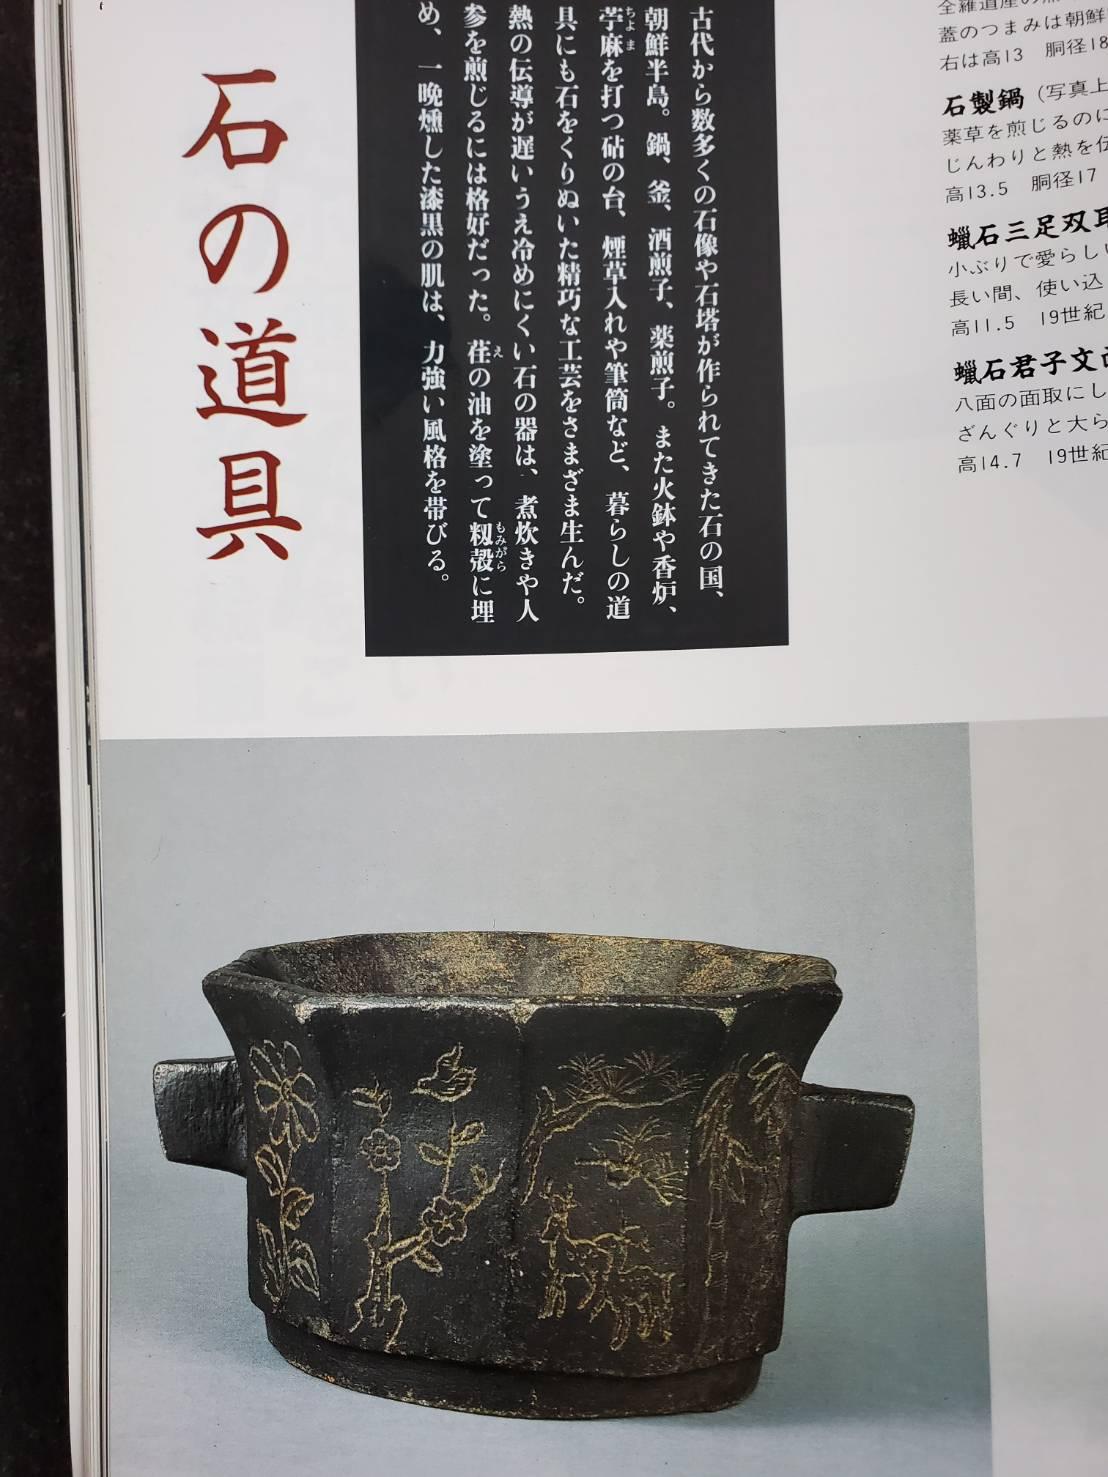 Korean antique stone bowl / 19th century / wabi-sabi vase / Joseon Dynasty 8